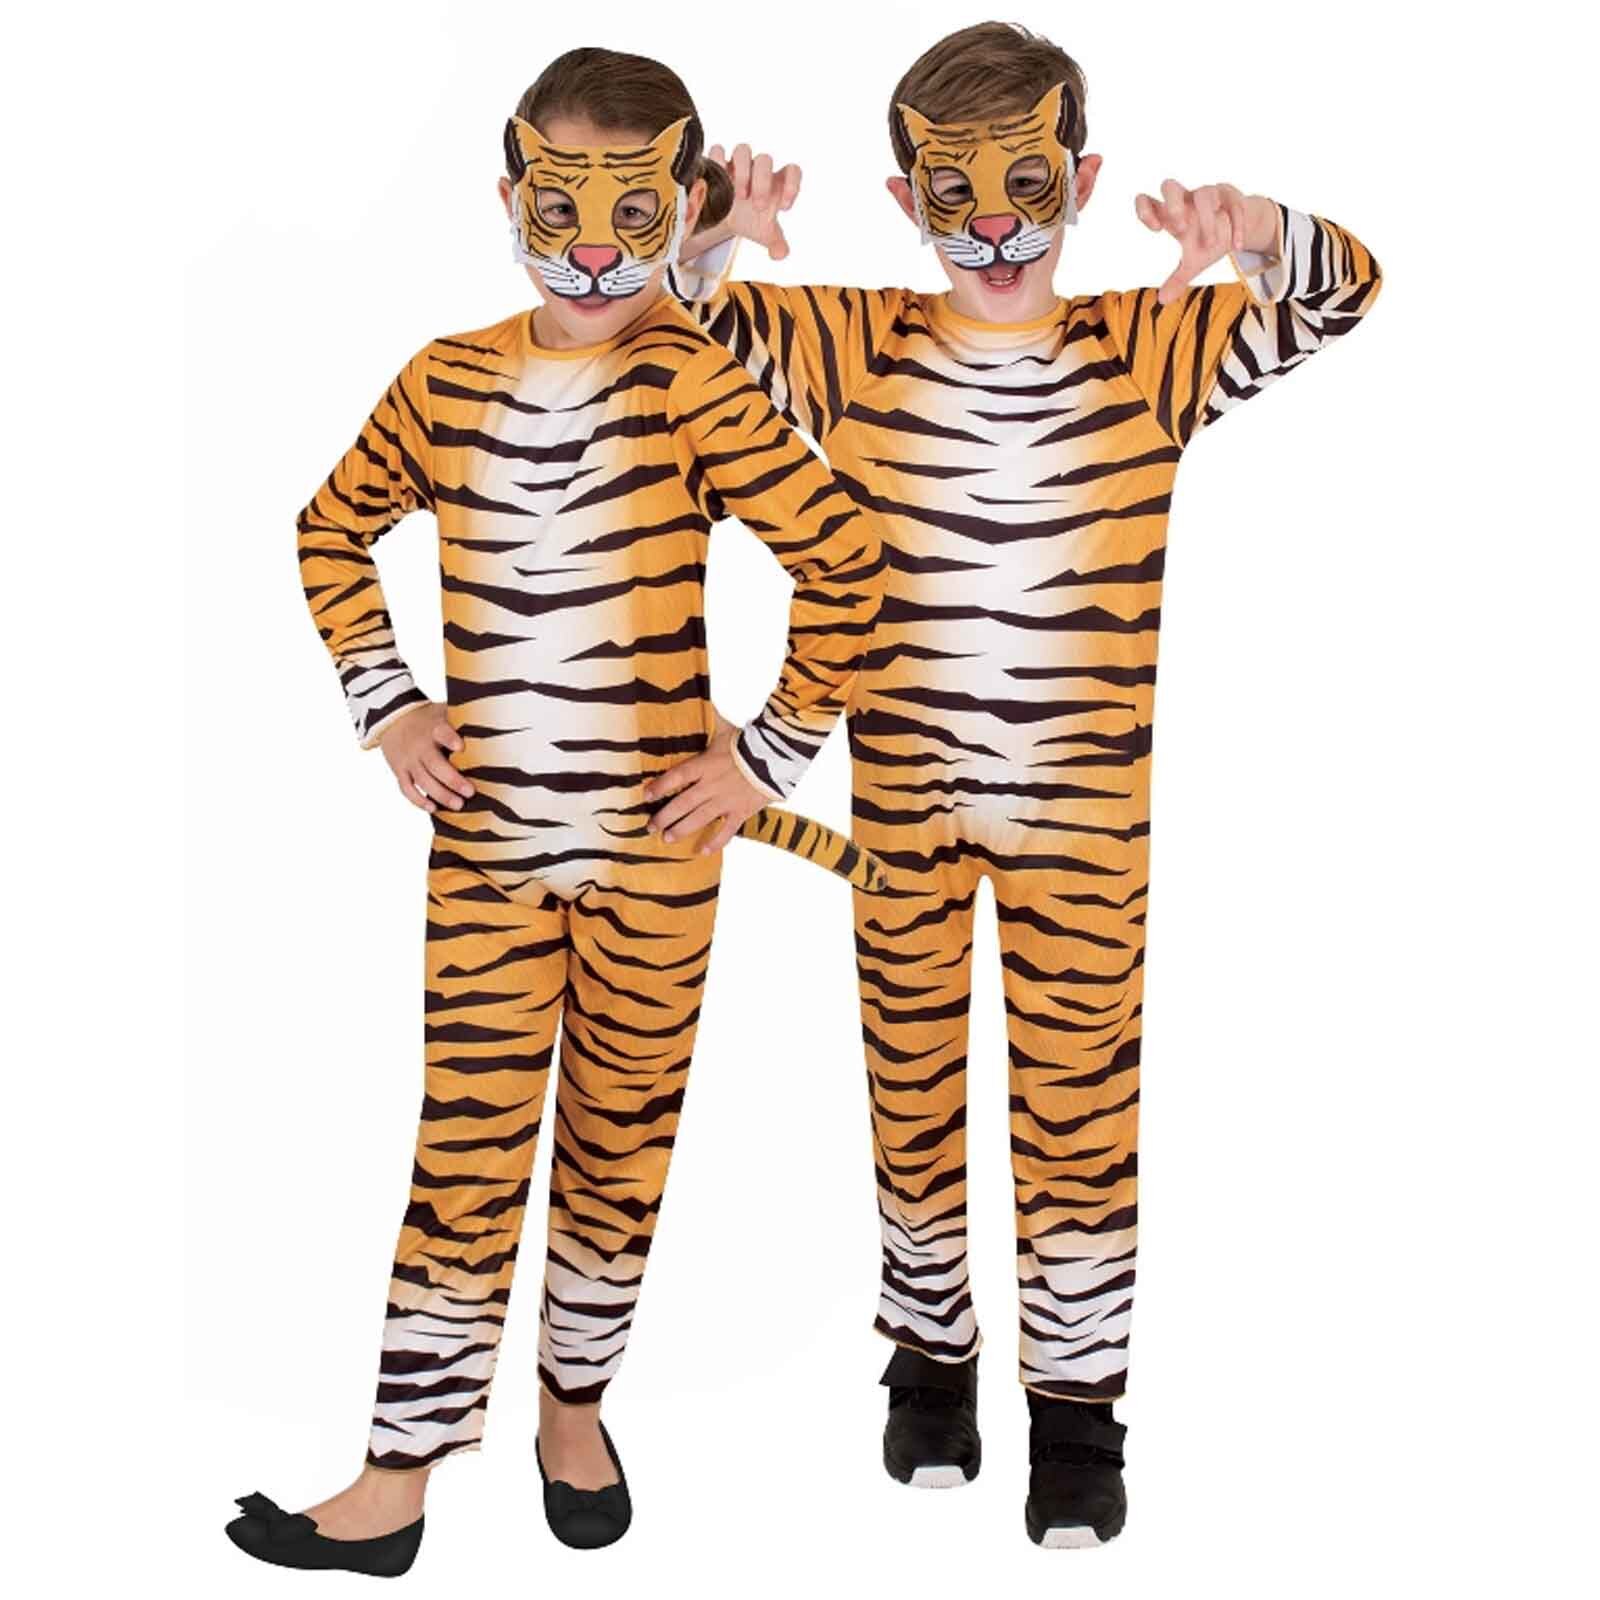 Premium Tiger Child Costume 